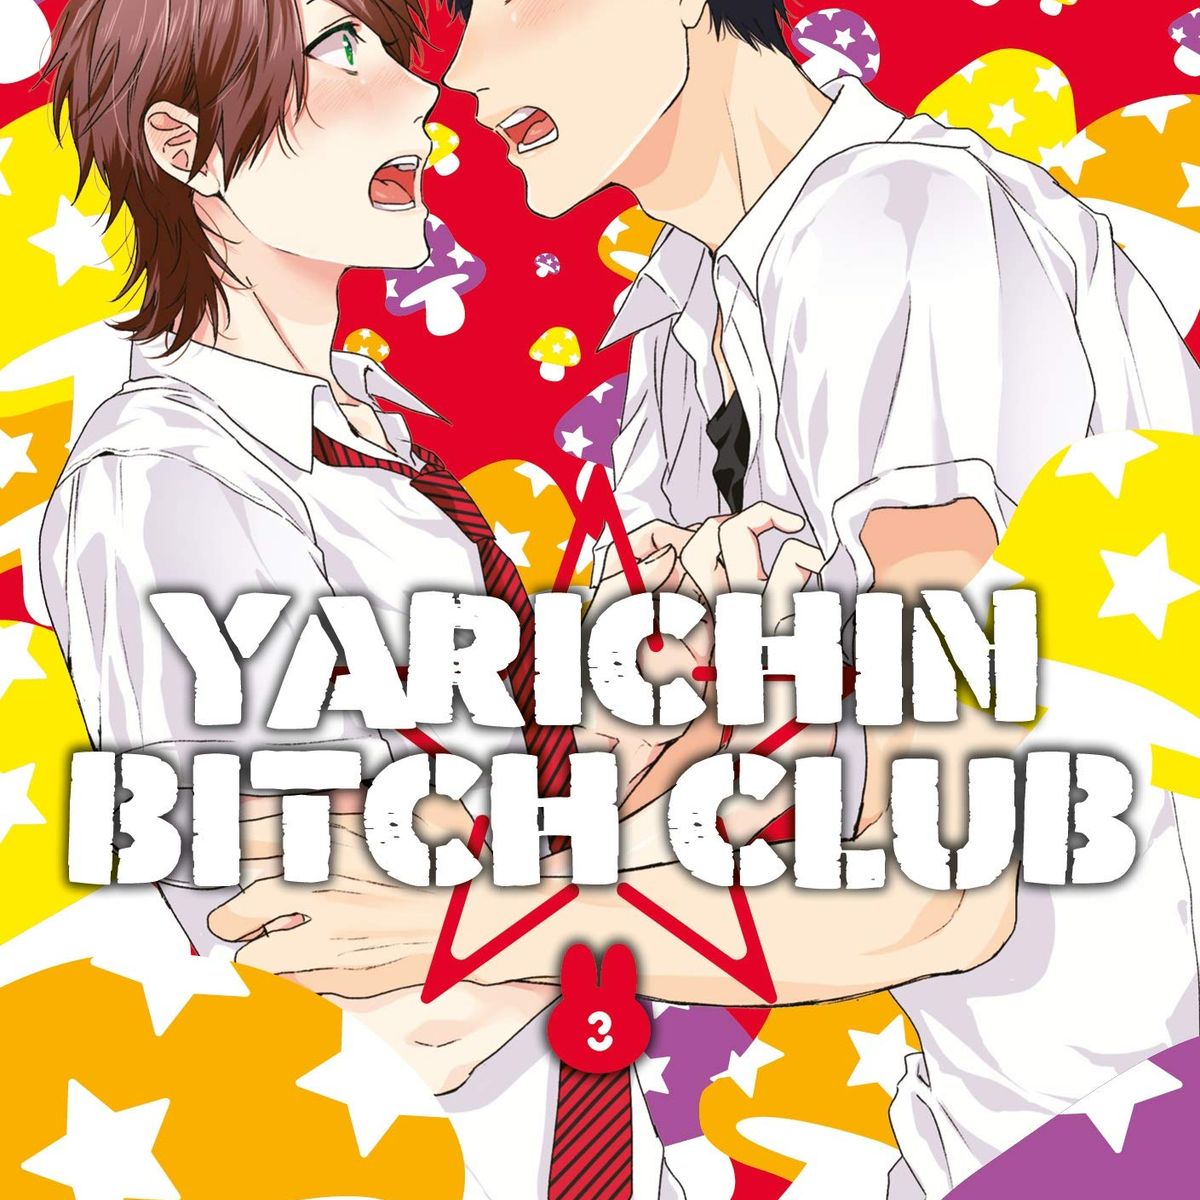 Yarichin Bitch Club - Touch You [Legendado/Tradução] 